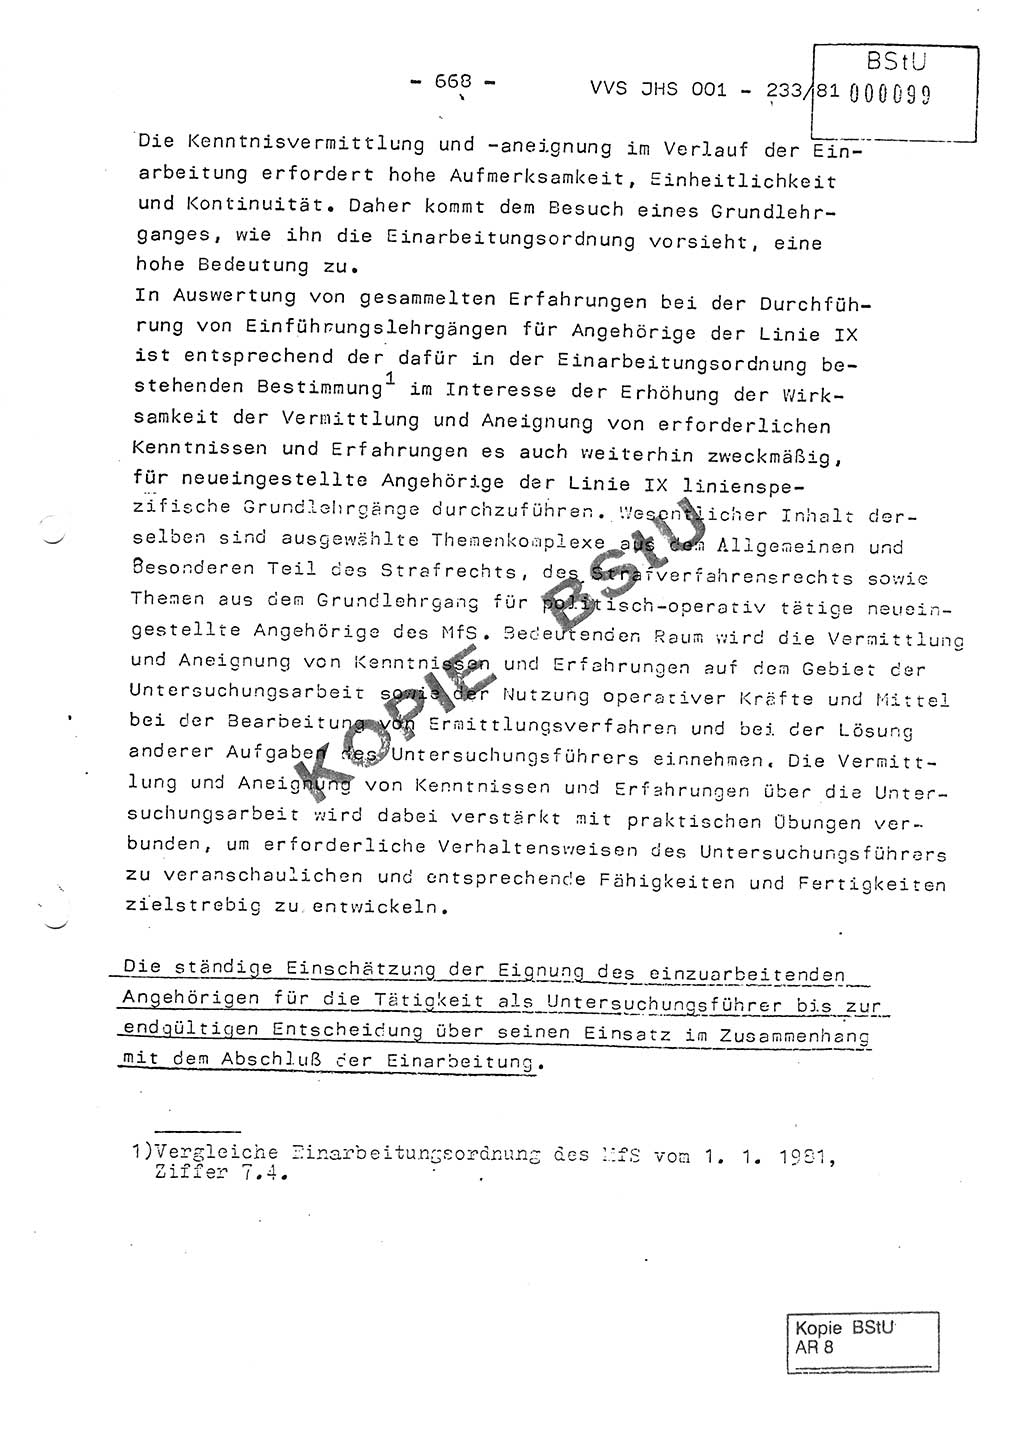 Dissertation Oberstleutnant Horst Zank (JHS), Oberstleutnant Dr. Karl-Heinz Knoblauch (JHS), Oberstleutnant Gustav-Adolf Kowalewski (HA Ⅸ), Oberstleutnant Wolfgang Plötner (HA Ⅸ), Ministerium für Staatssicherheit (MfS) [Deutsche Demokratische Republik (DDR)], Juristische Hochschule (JHS), Vertrauliche Verschlußsache (VVS) o001-233/81, Potsdam 1981, Blatt 668 (Diss. MfS DDR JHS VVS o001-233/81 1981, Bl. 668)